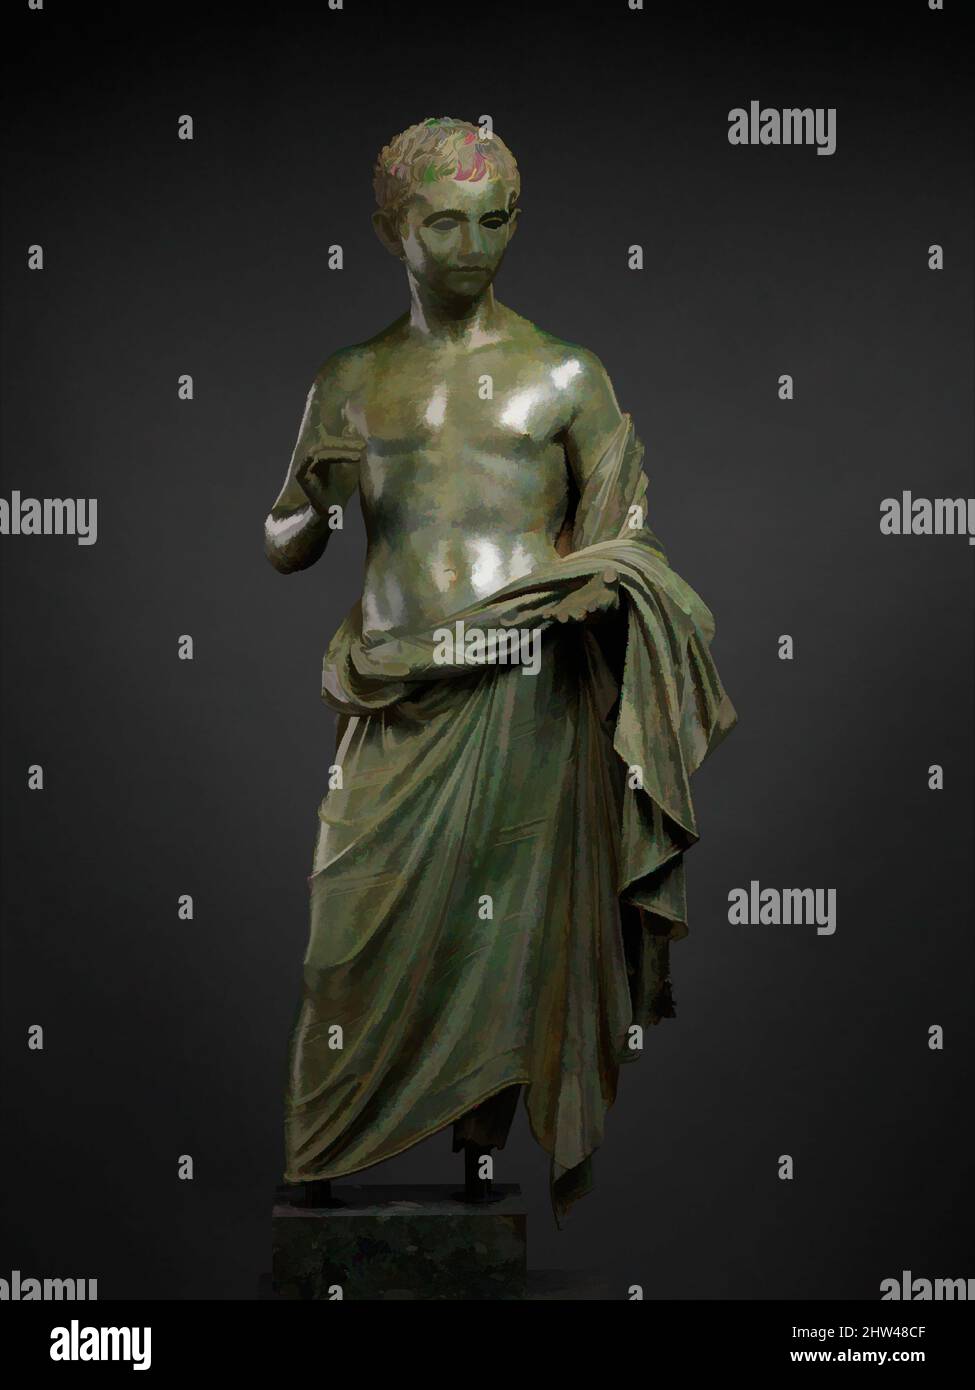 Art inspiré par la statue en bronze d'un garçon aristocratique, Augustan, 27 B.C.–A.D. 14, romain, bronze, 46 1/2 × 20 × 16 1/2 po., 150 lb. (118,1 × 50,8 × 41,9 cm, 68 kg), bronzes, cette statue grandeur nature a été trouvée sur l'île de la Méditerranée orientale de Rhodes, dont les villes grecques anciennes étaient, oeuvres classiques modernisées par Artotop avec un peu de modernité. Formes, couleur et valeur, impact visuel accrocheur sur l'art émotions par la liberté d'œuvres d'art d'une manière contemporaine. Un message intemporel qui cherche une nouvelle direction créative. Artistes qui se tournent vers le support numérique et créent le NFT Artotop Banque D'Images